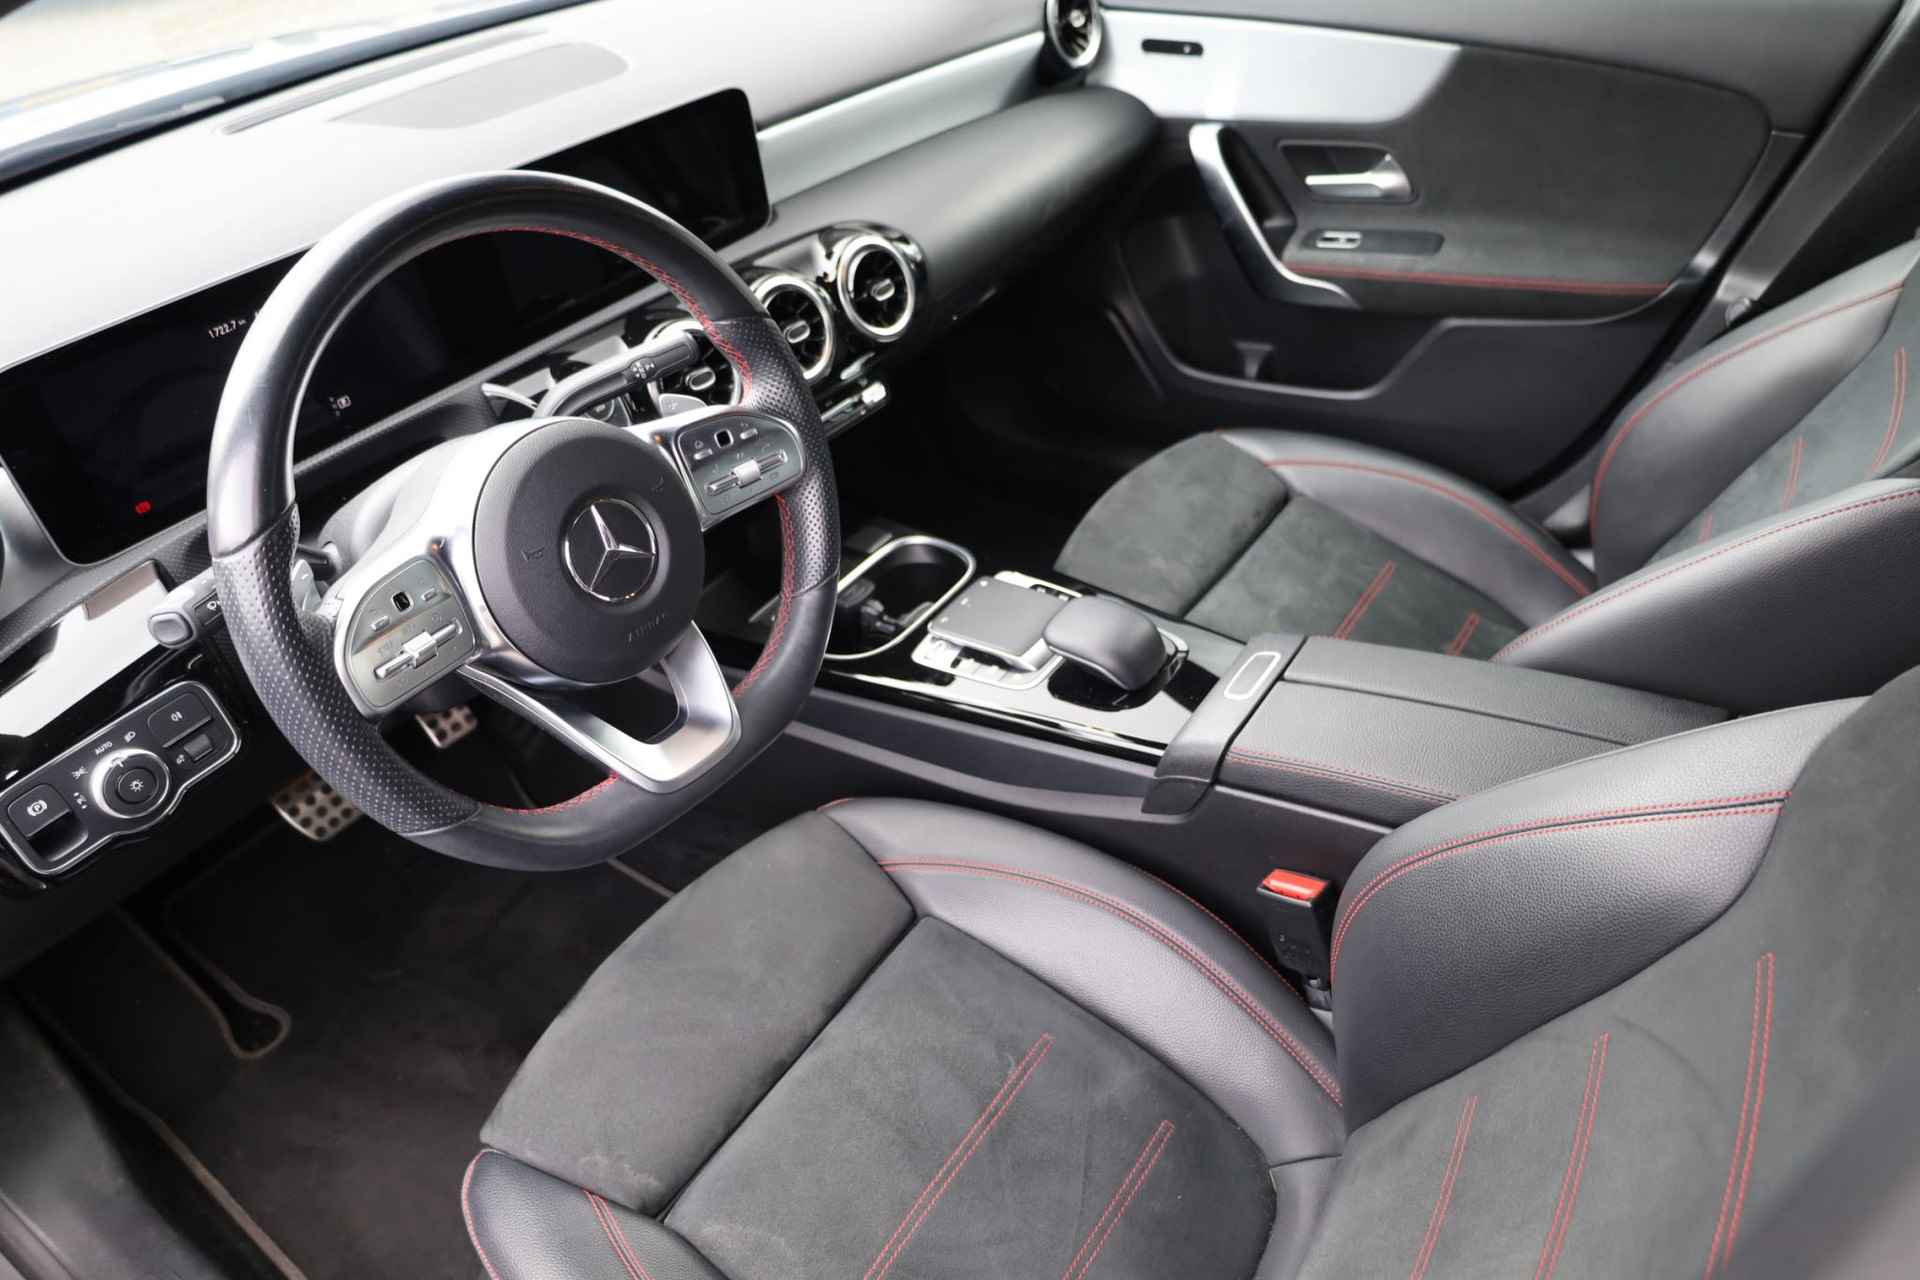 Mercedes-Benz A-klasse 200 Business Solution AMG 163PK / 120kW automaat, Leder / alcantara, winterset LMV, digitaal dashboard, navigatie, LED verlichting voor en achter, 18" LMV, stoelverwarming, parkeersensoren voor en achter, AMG bumpers - 10/44